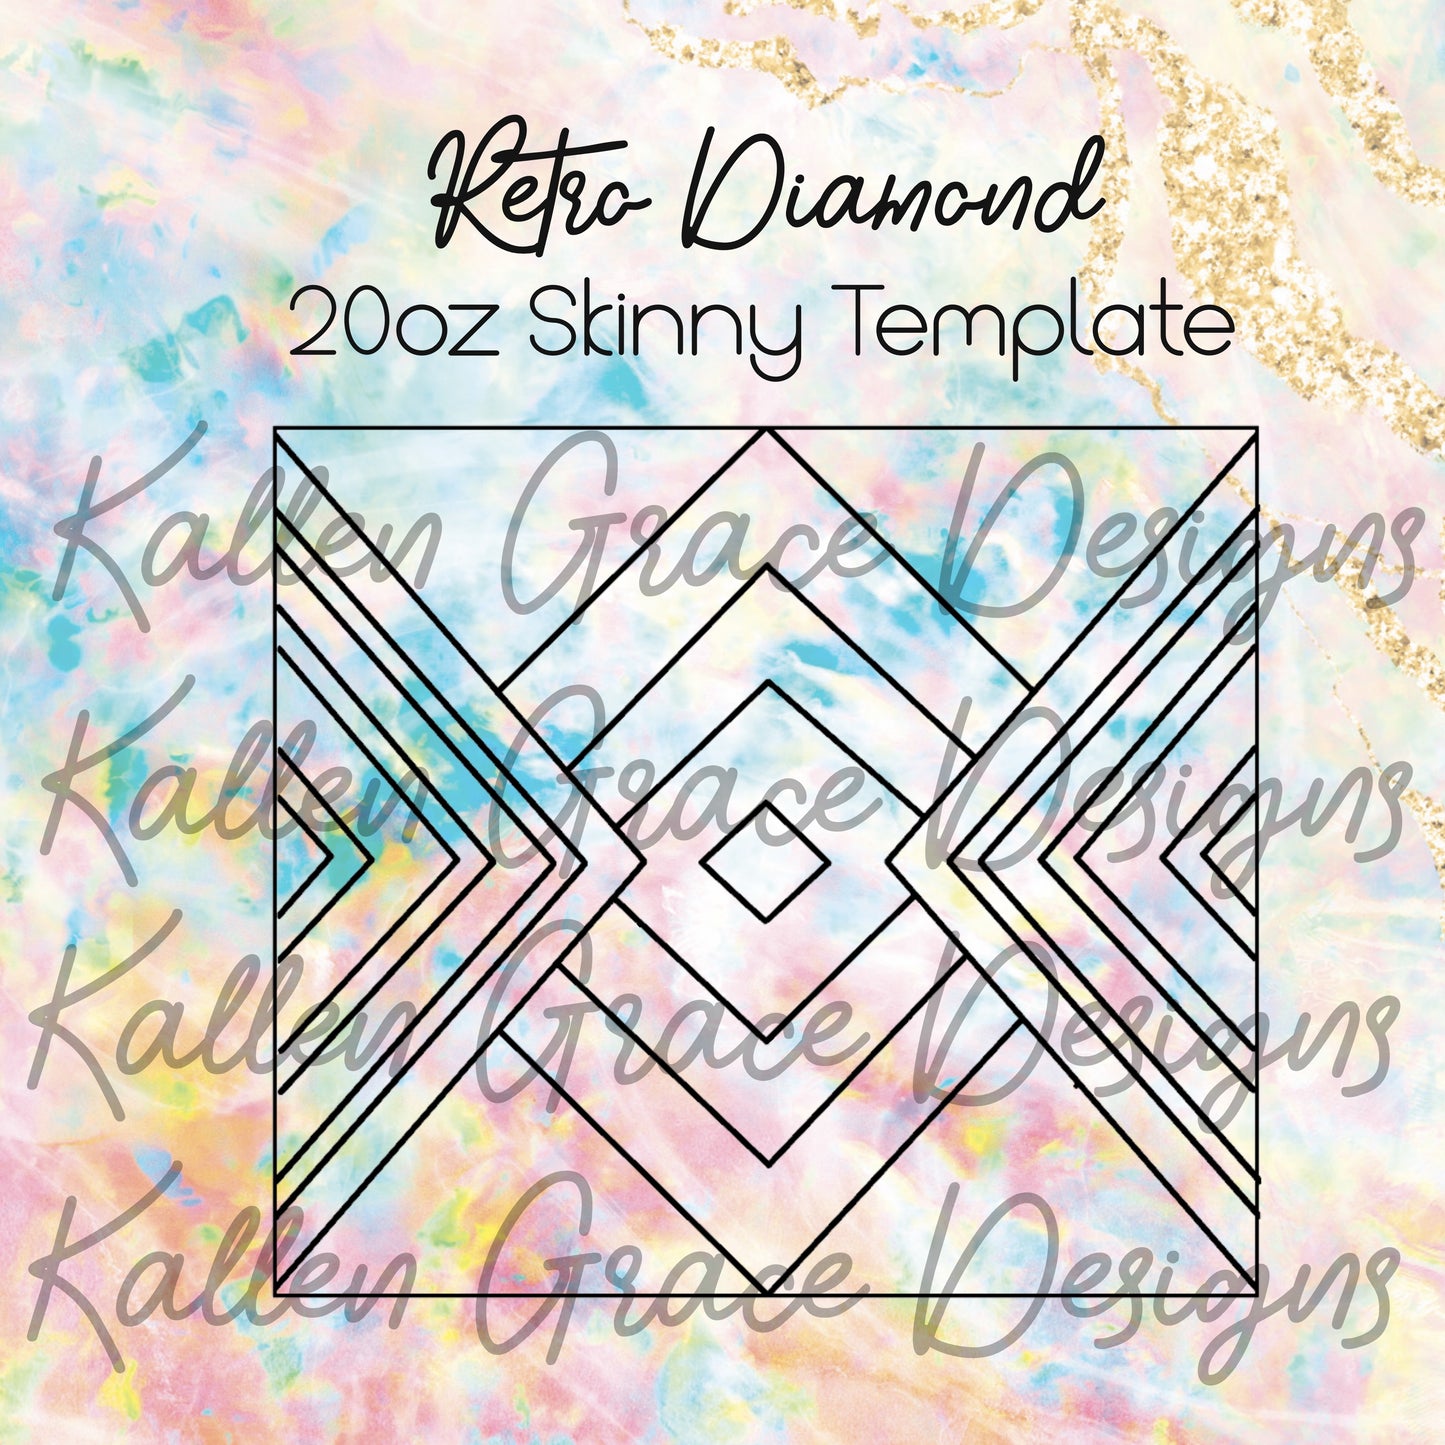 20oz Skinny Retro Diamond Template